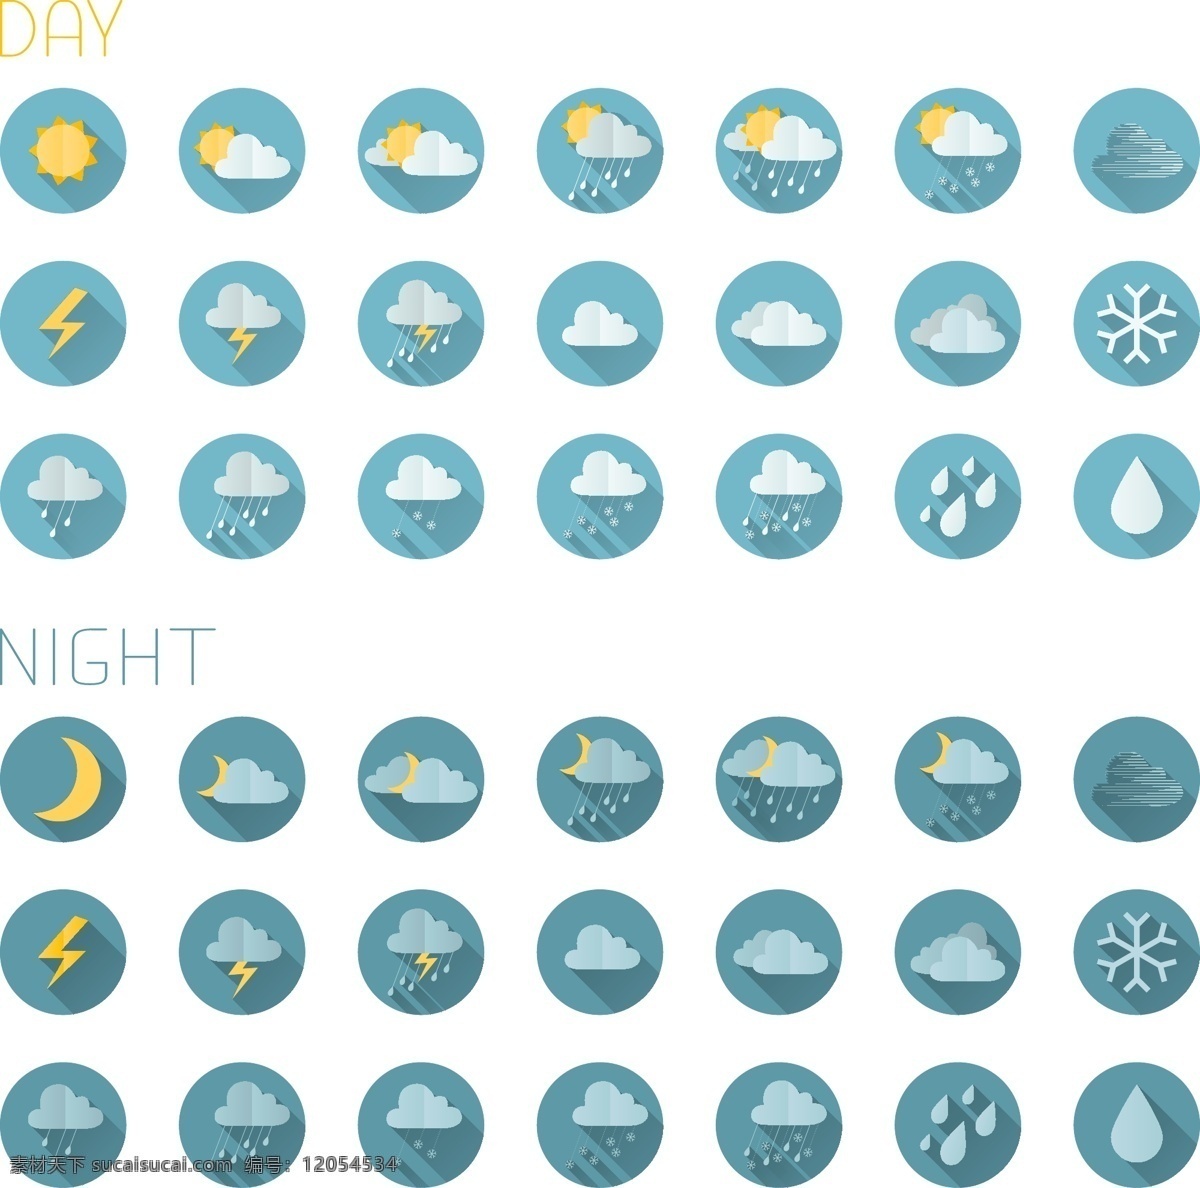 圆形天气图标 太阳 月亮 雷电 雨雪 天气预报 天气图标 云朵图标 网页图标 创意图标 时尚图标 标志图标 矢量素材 白色